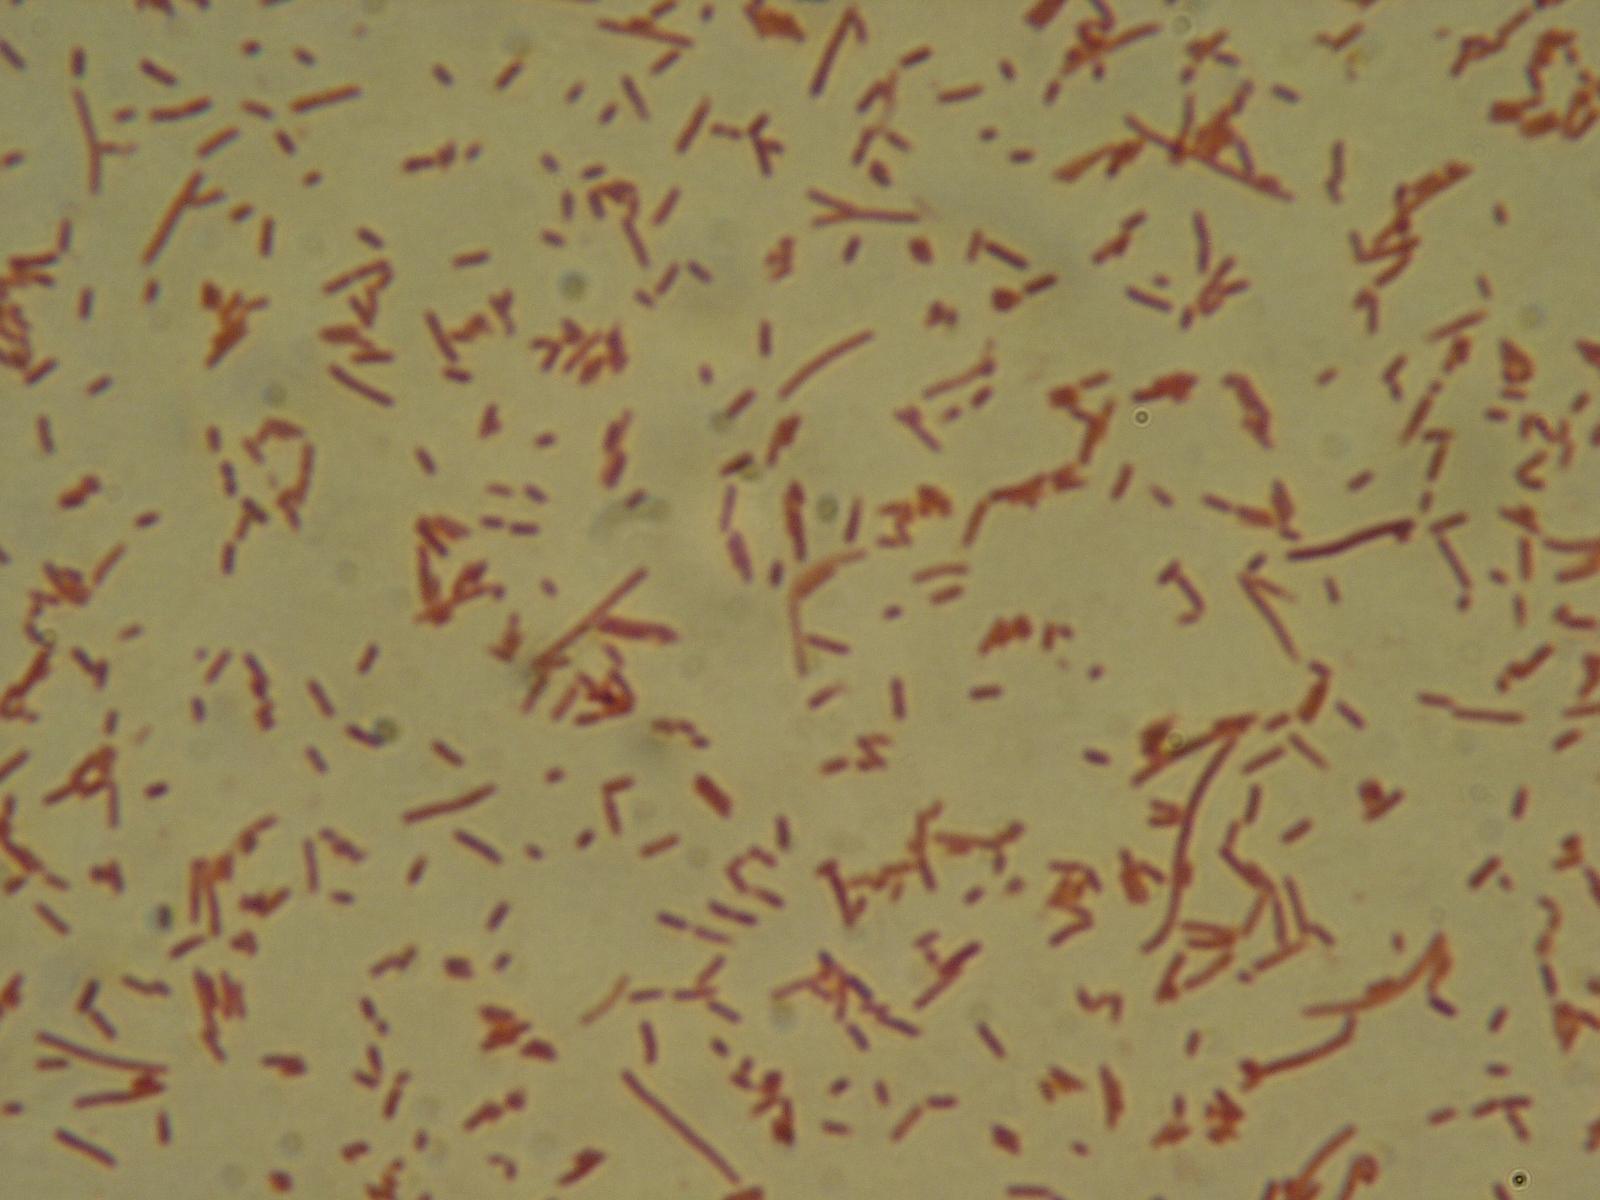 Сколько ангелов на кончике иглы. Escherichia coli в микроскопе.